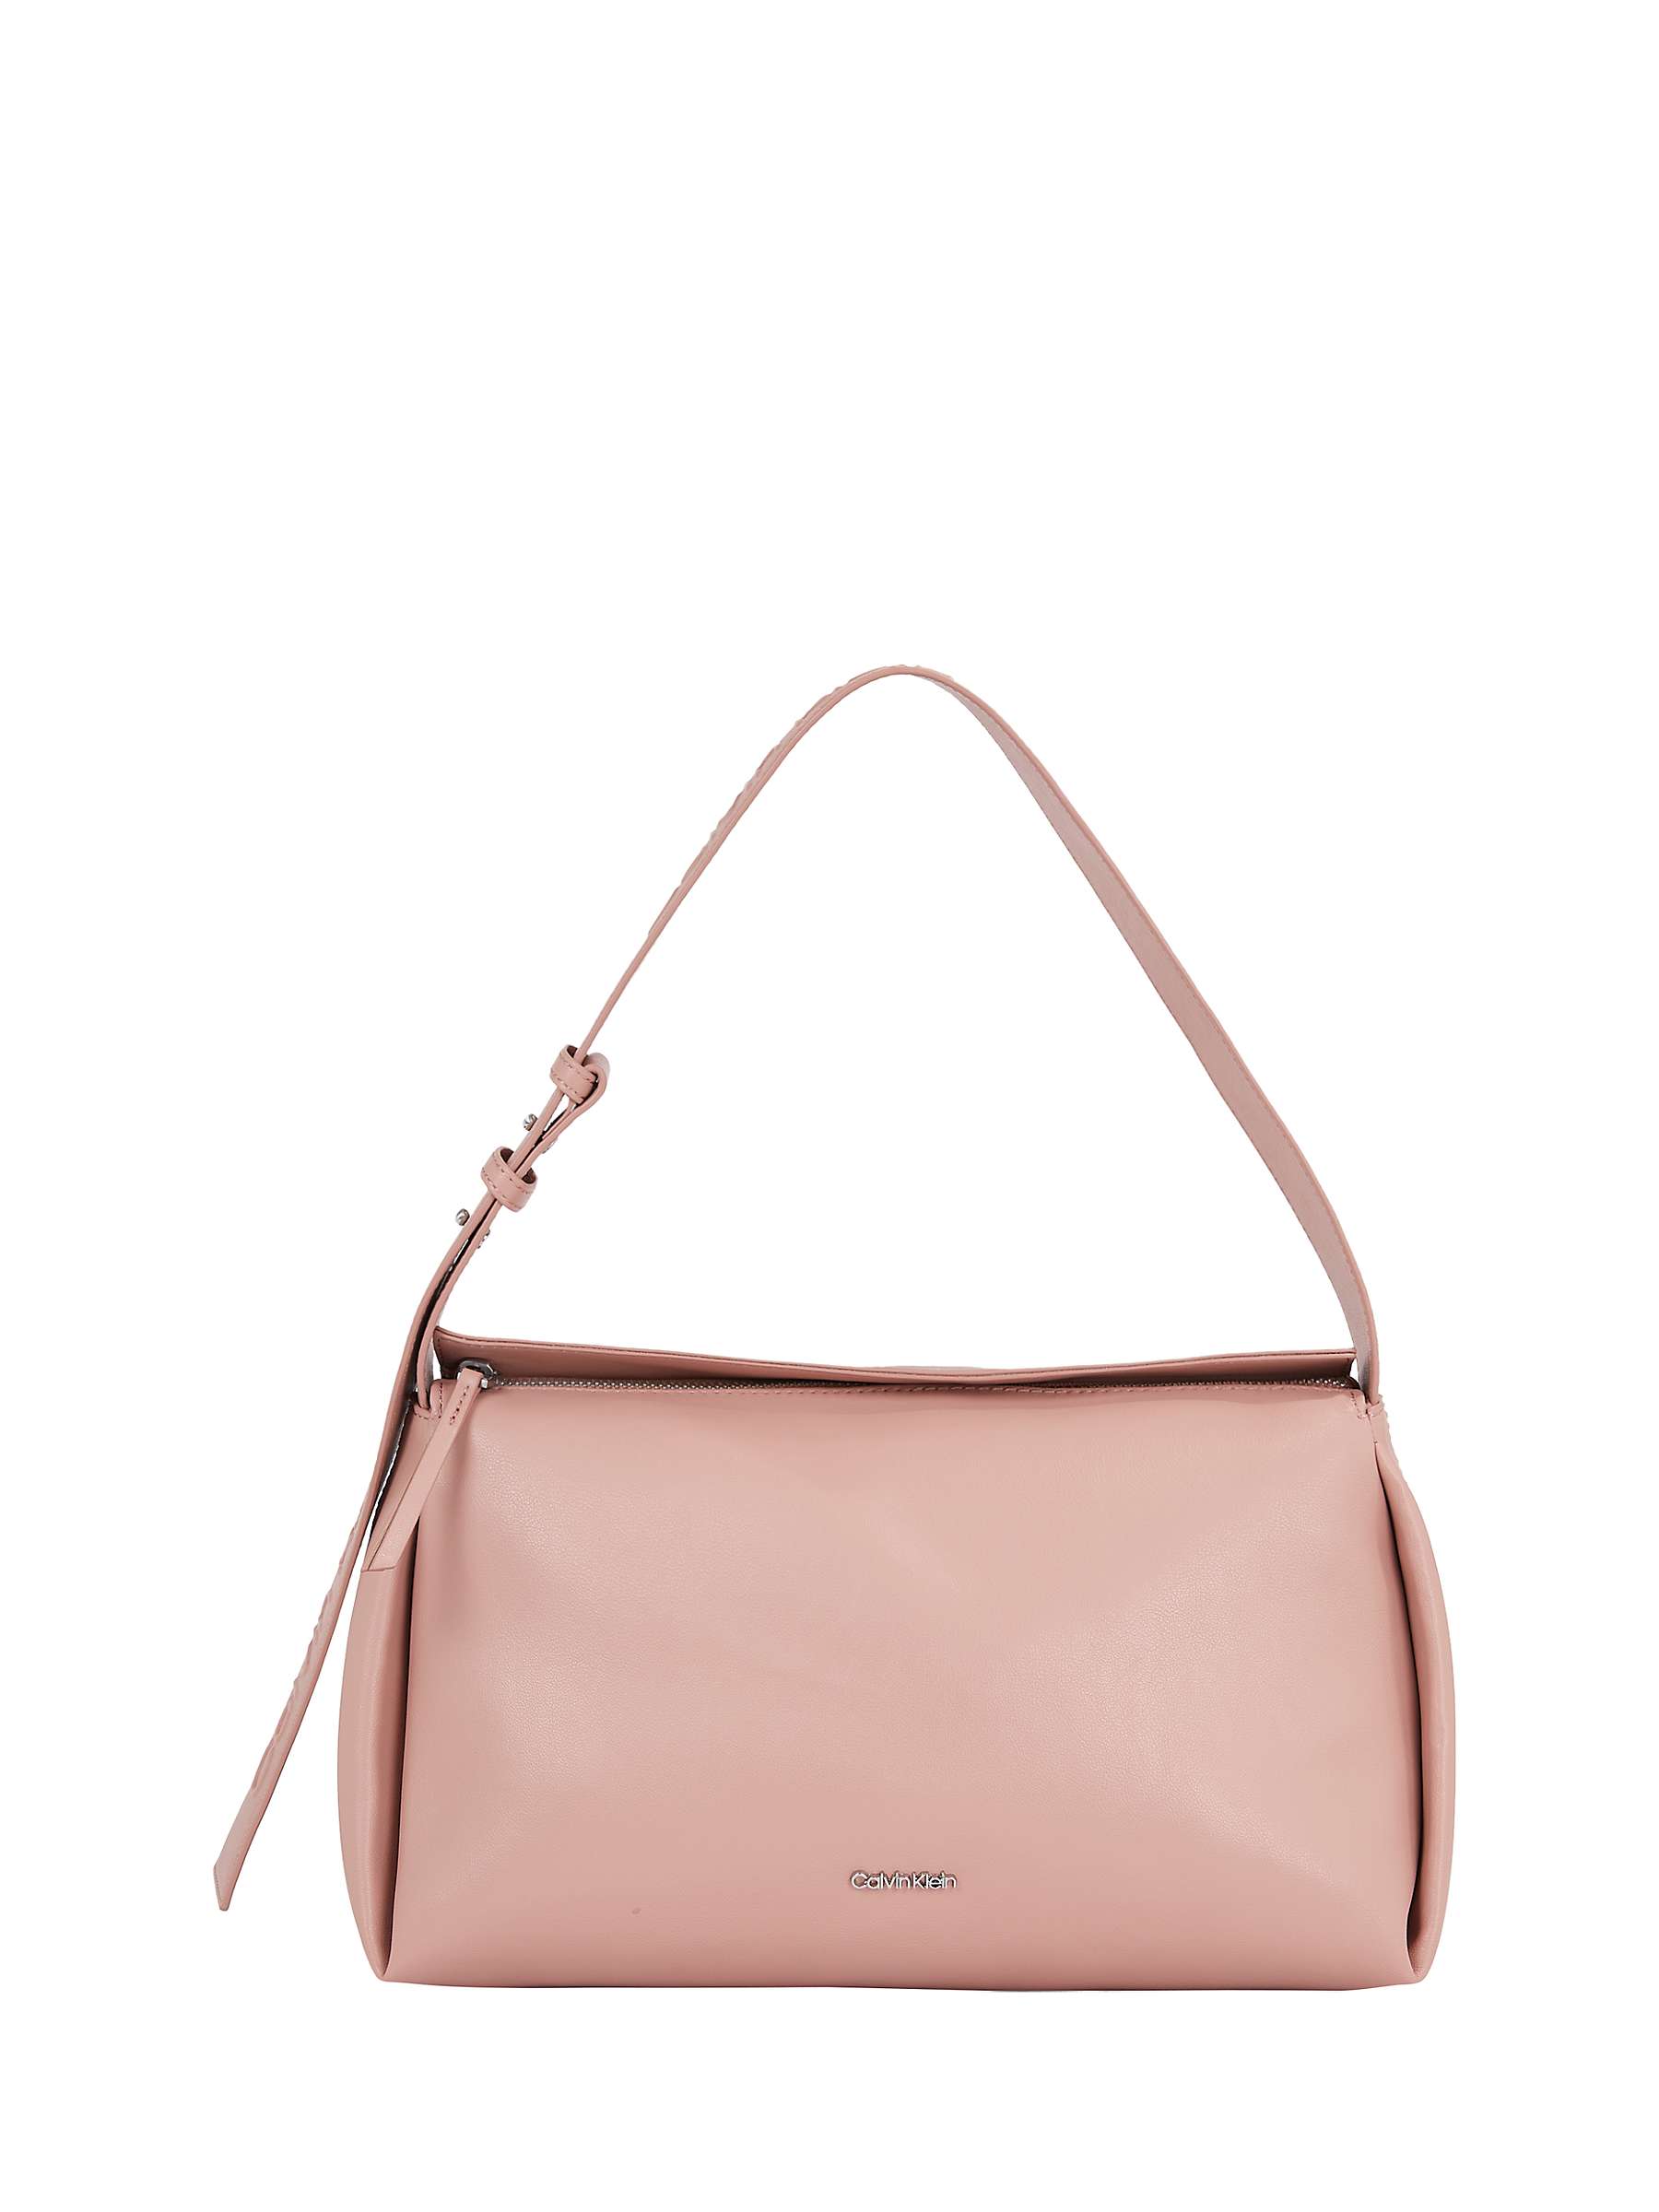 Buy Calvin Klein Gracie Shoulder Bag, Ash Rose Online at johnlewis.com